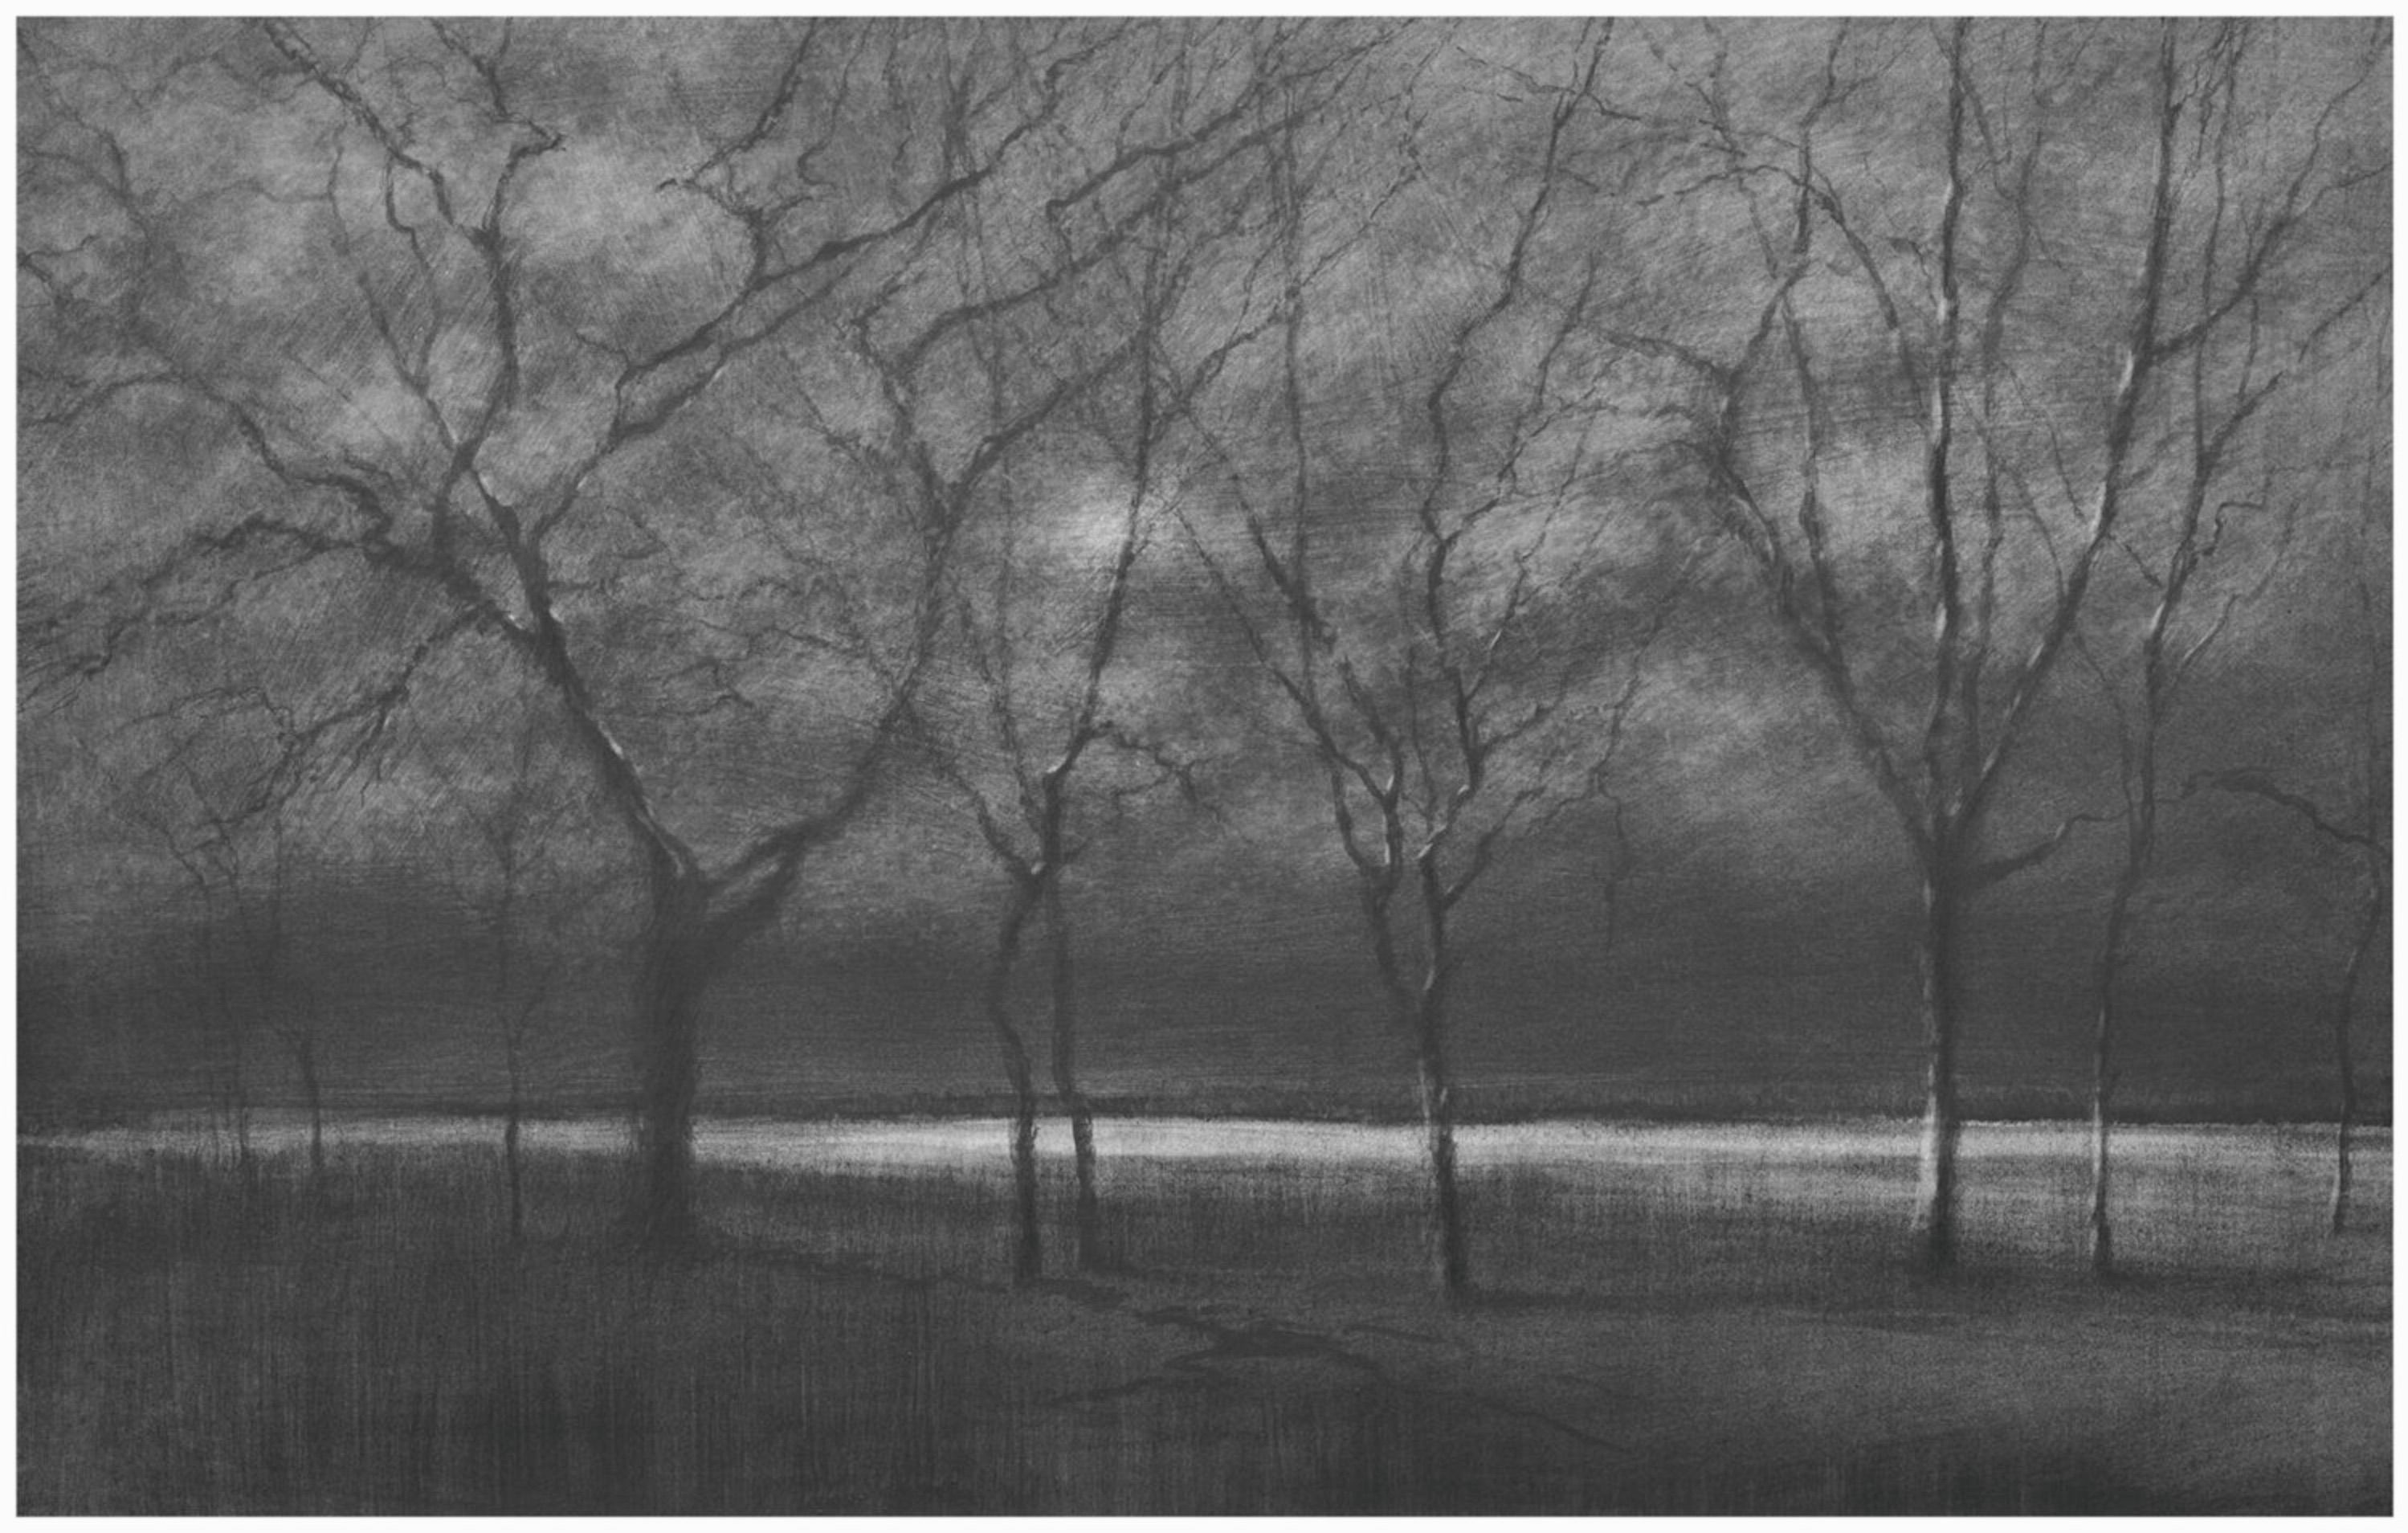 Danja Akulin Bleistift kohle Zeichnung Bäume ohne Blätter auf Wiese im dunkeln mit Mondlicht